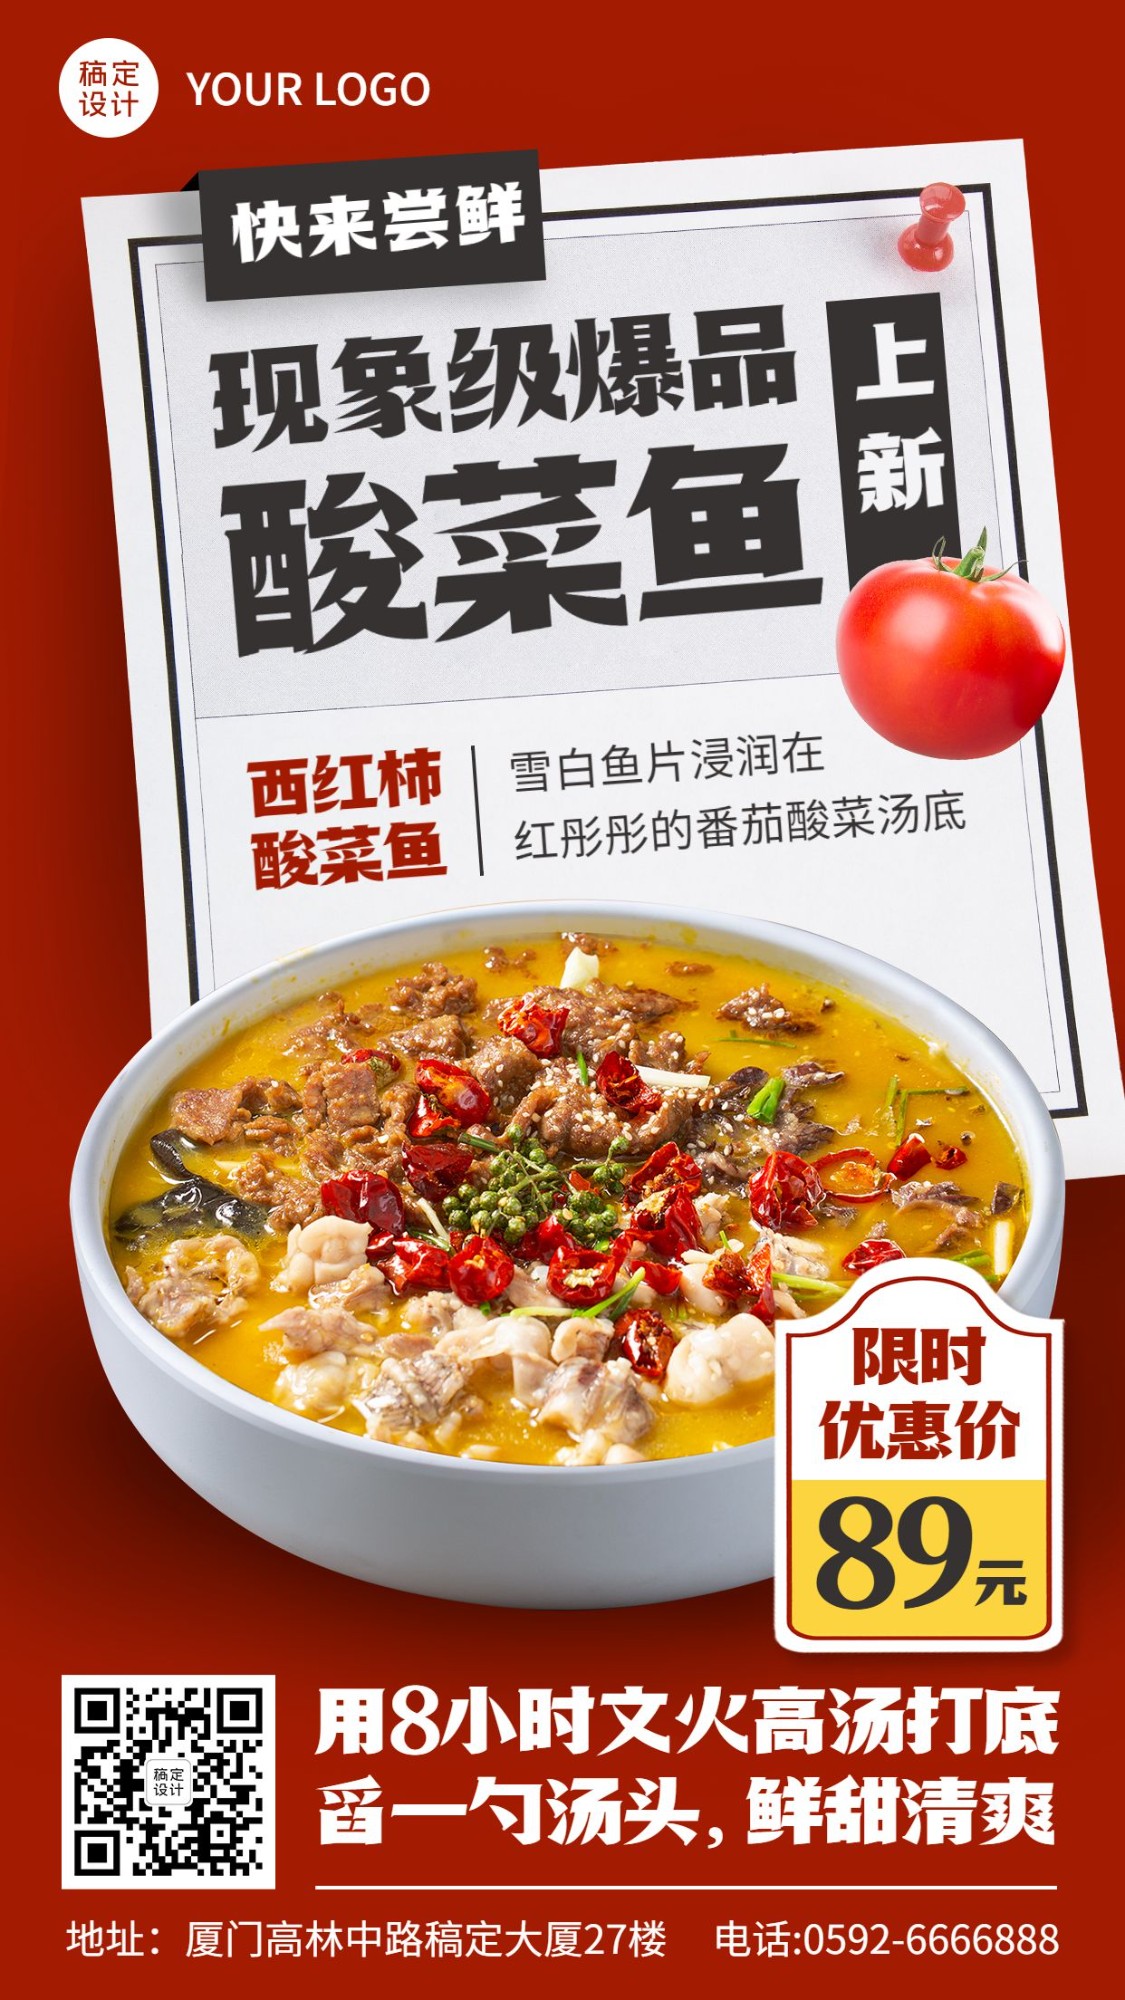 餐饮酸菜鱼新品上市营销手机海报